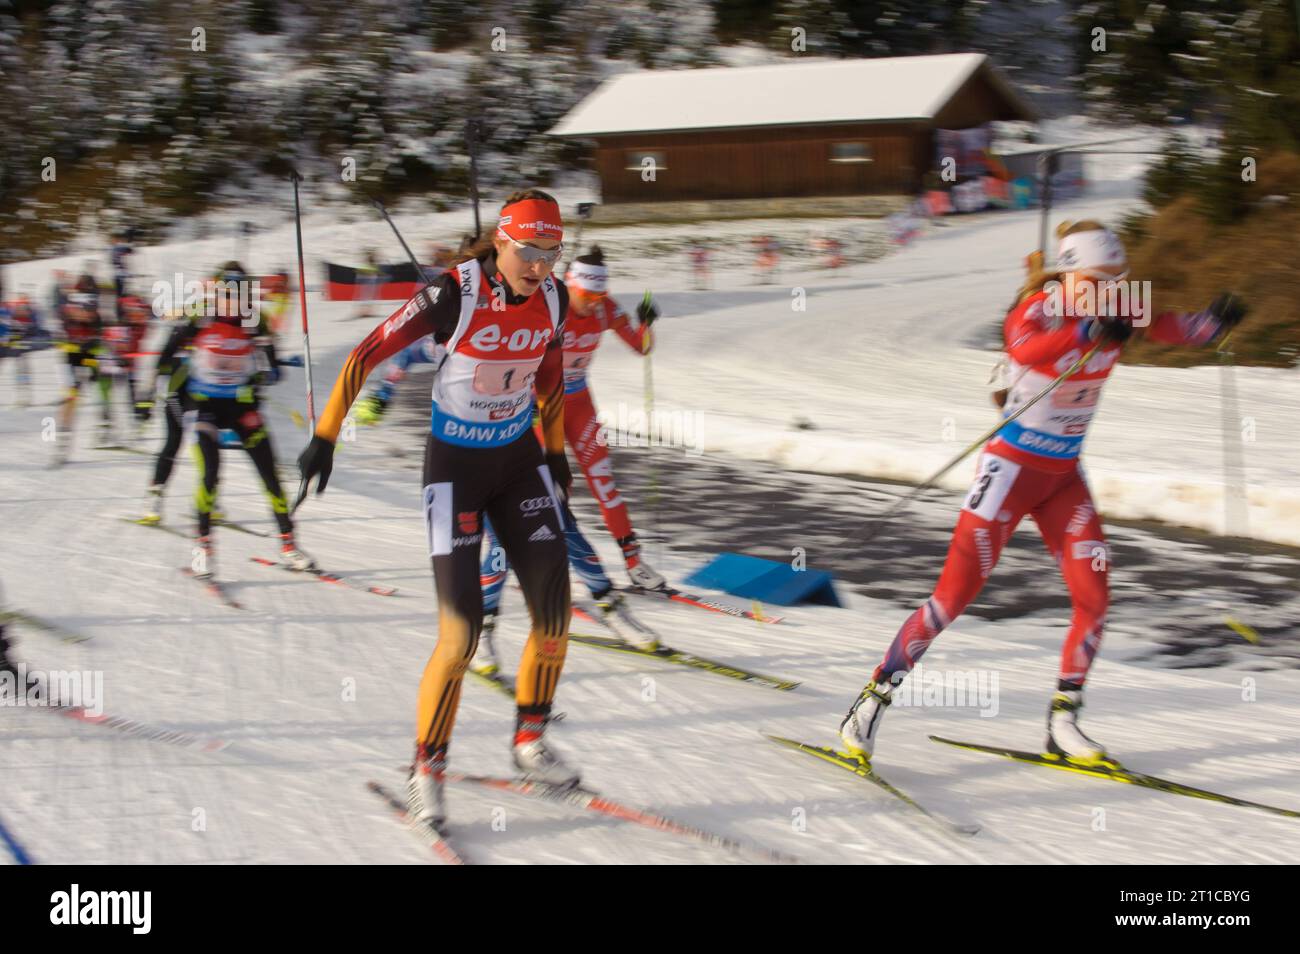 Luise Kummer Aktion Biathlon Welt Cup 4 x 6 KM Staffel der Frauen in Hochfilzen, Oesterreich am 13.12.2014 Stock Photo